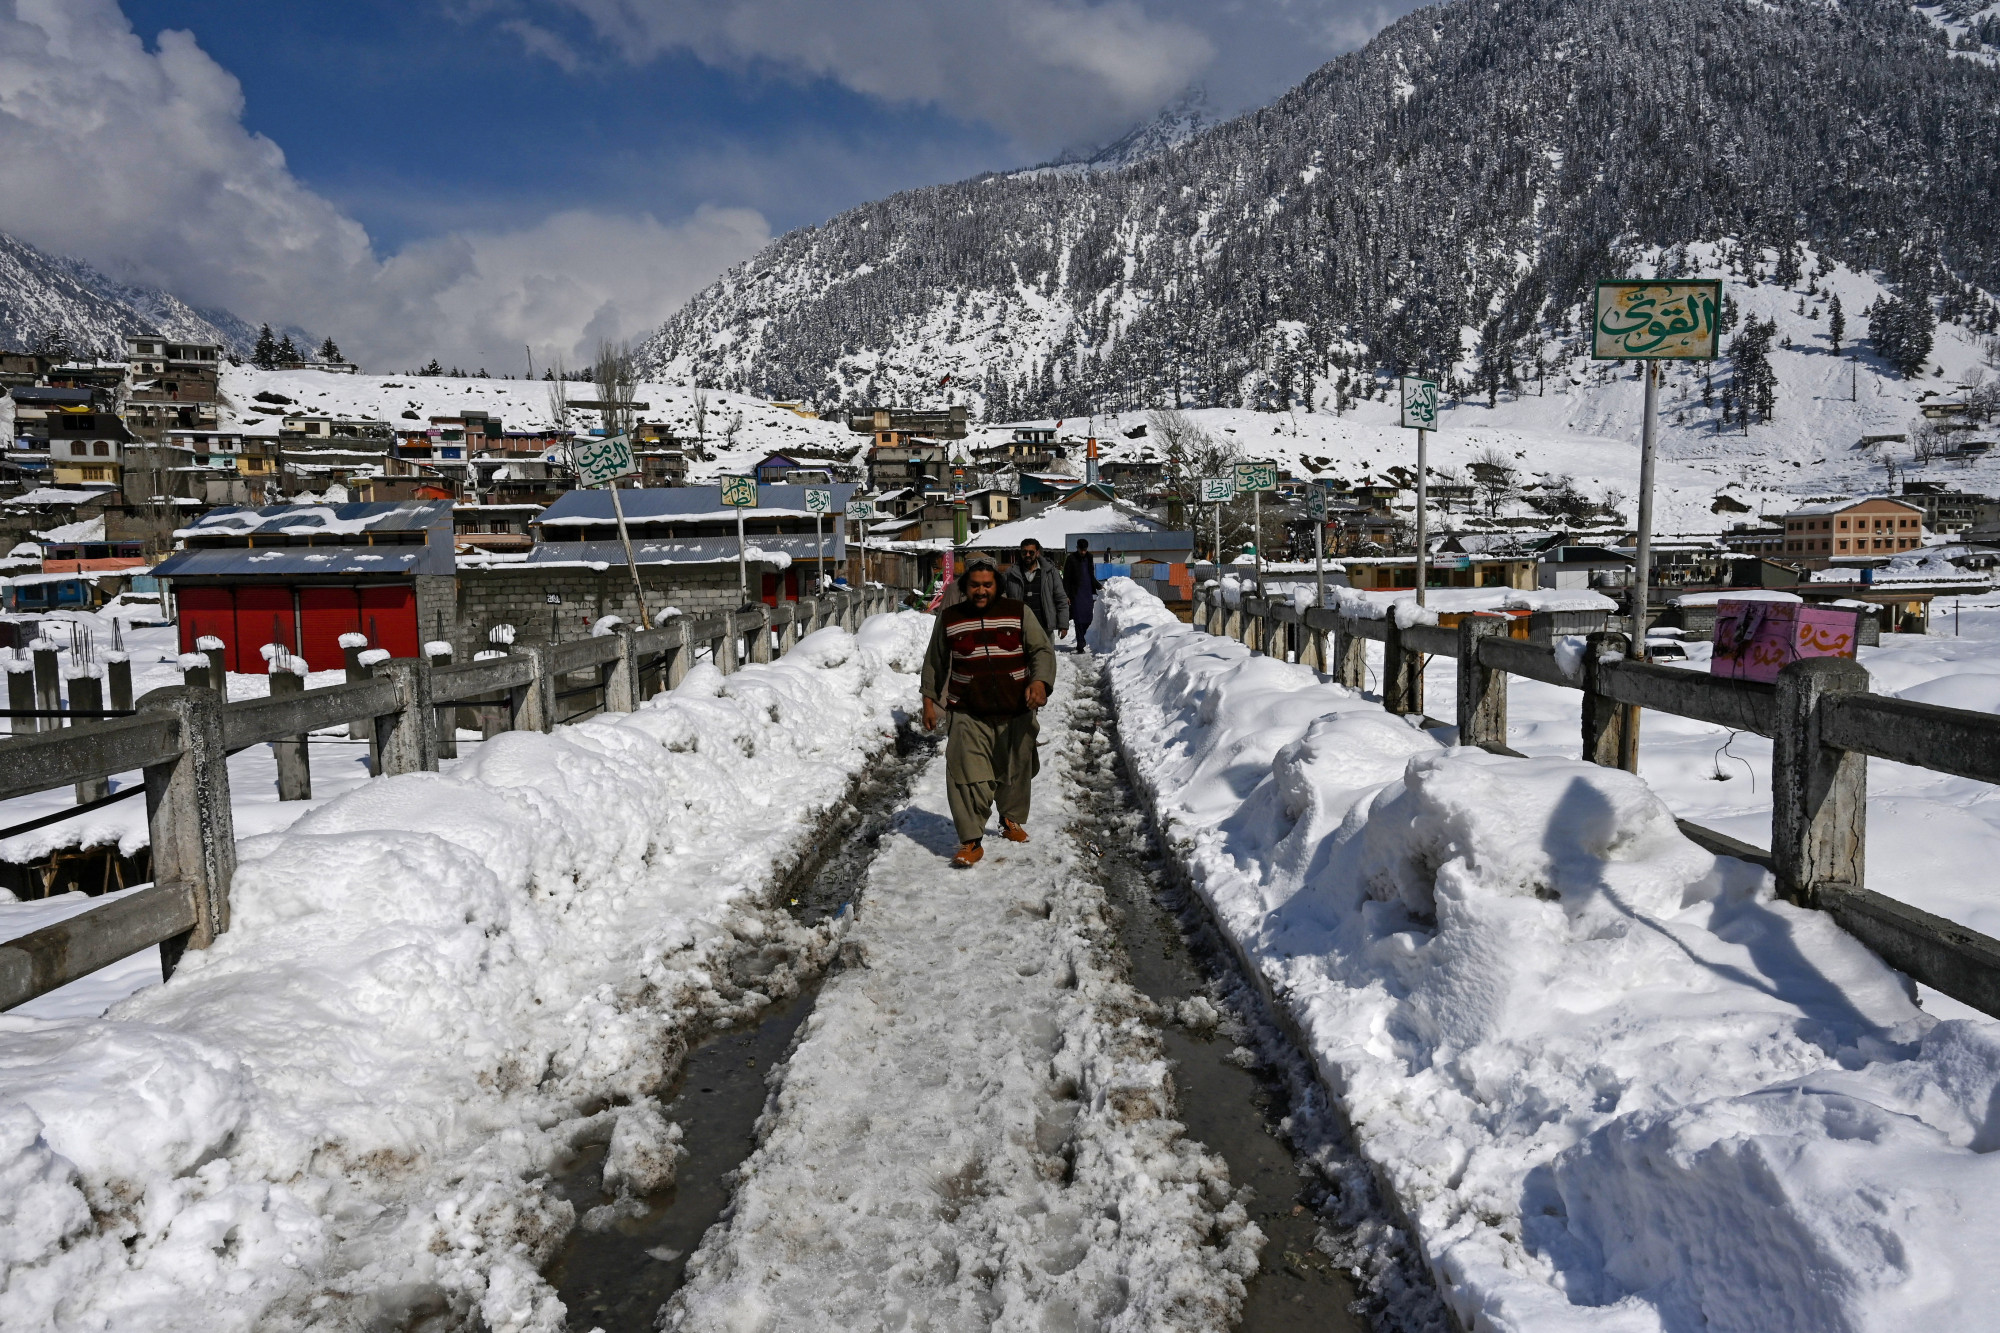 Legalább 35 ember meghalt, amikor váratlanul havazni kezdett Pakisztánban